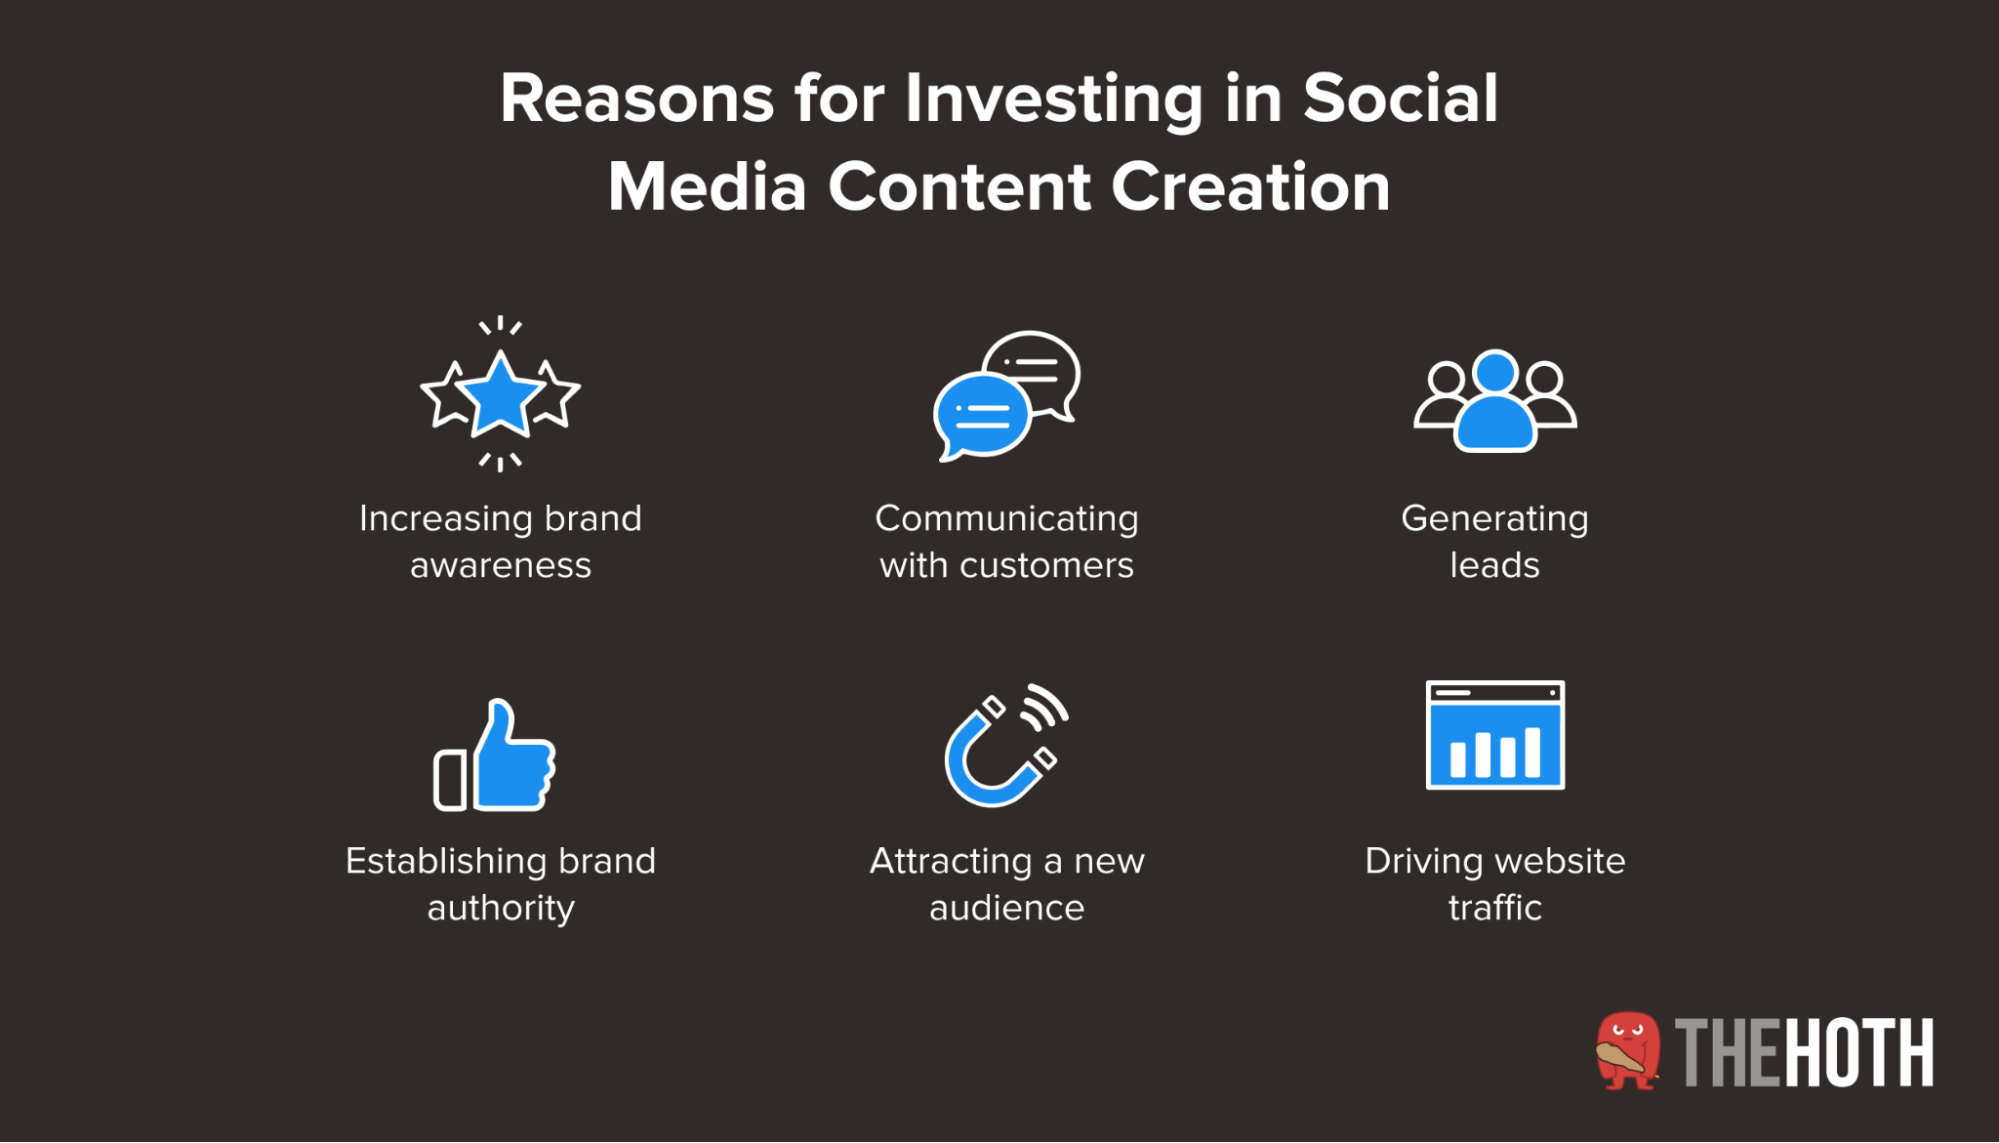 Benefits of social media content